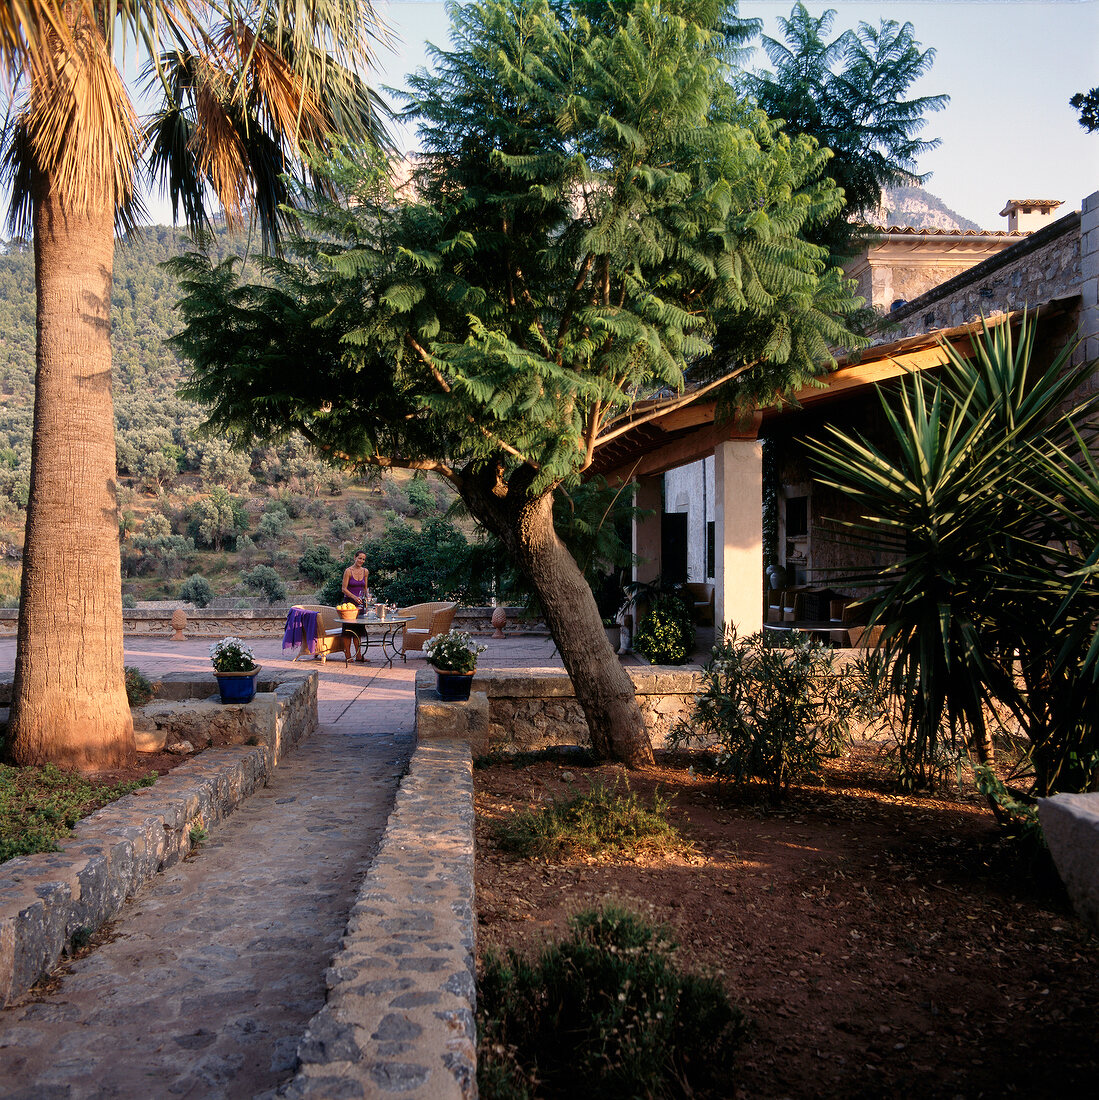 Herrenhaus "Son Bleda" m. Akazien u. Palmen im Sonnenschein, Mallorca